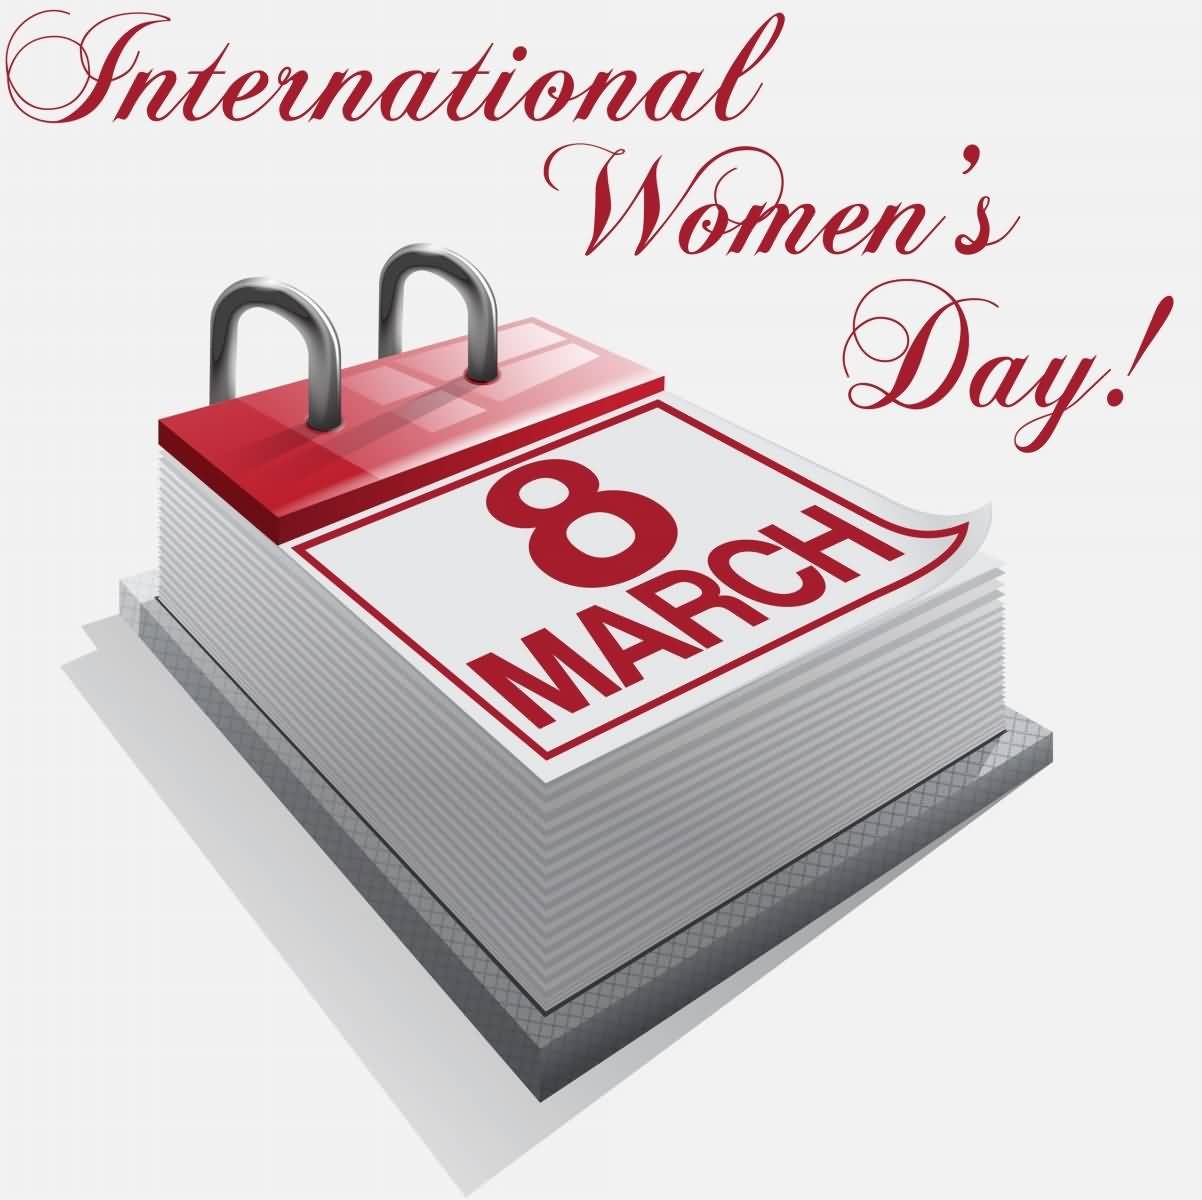 International Women’s Day 8 March Calendar